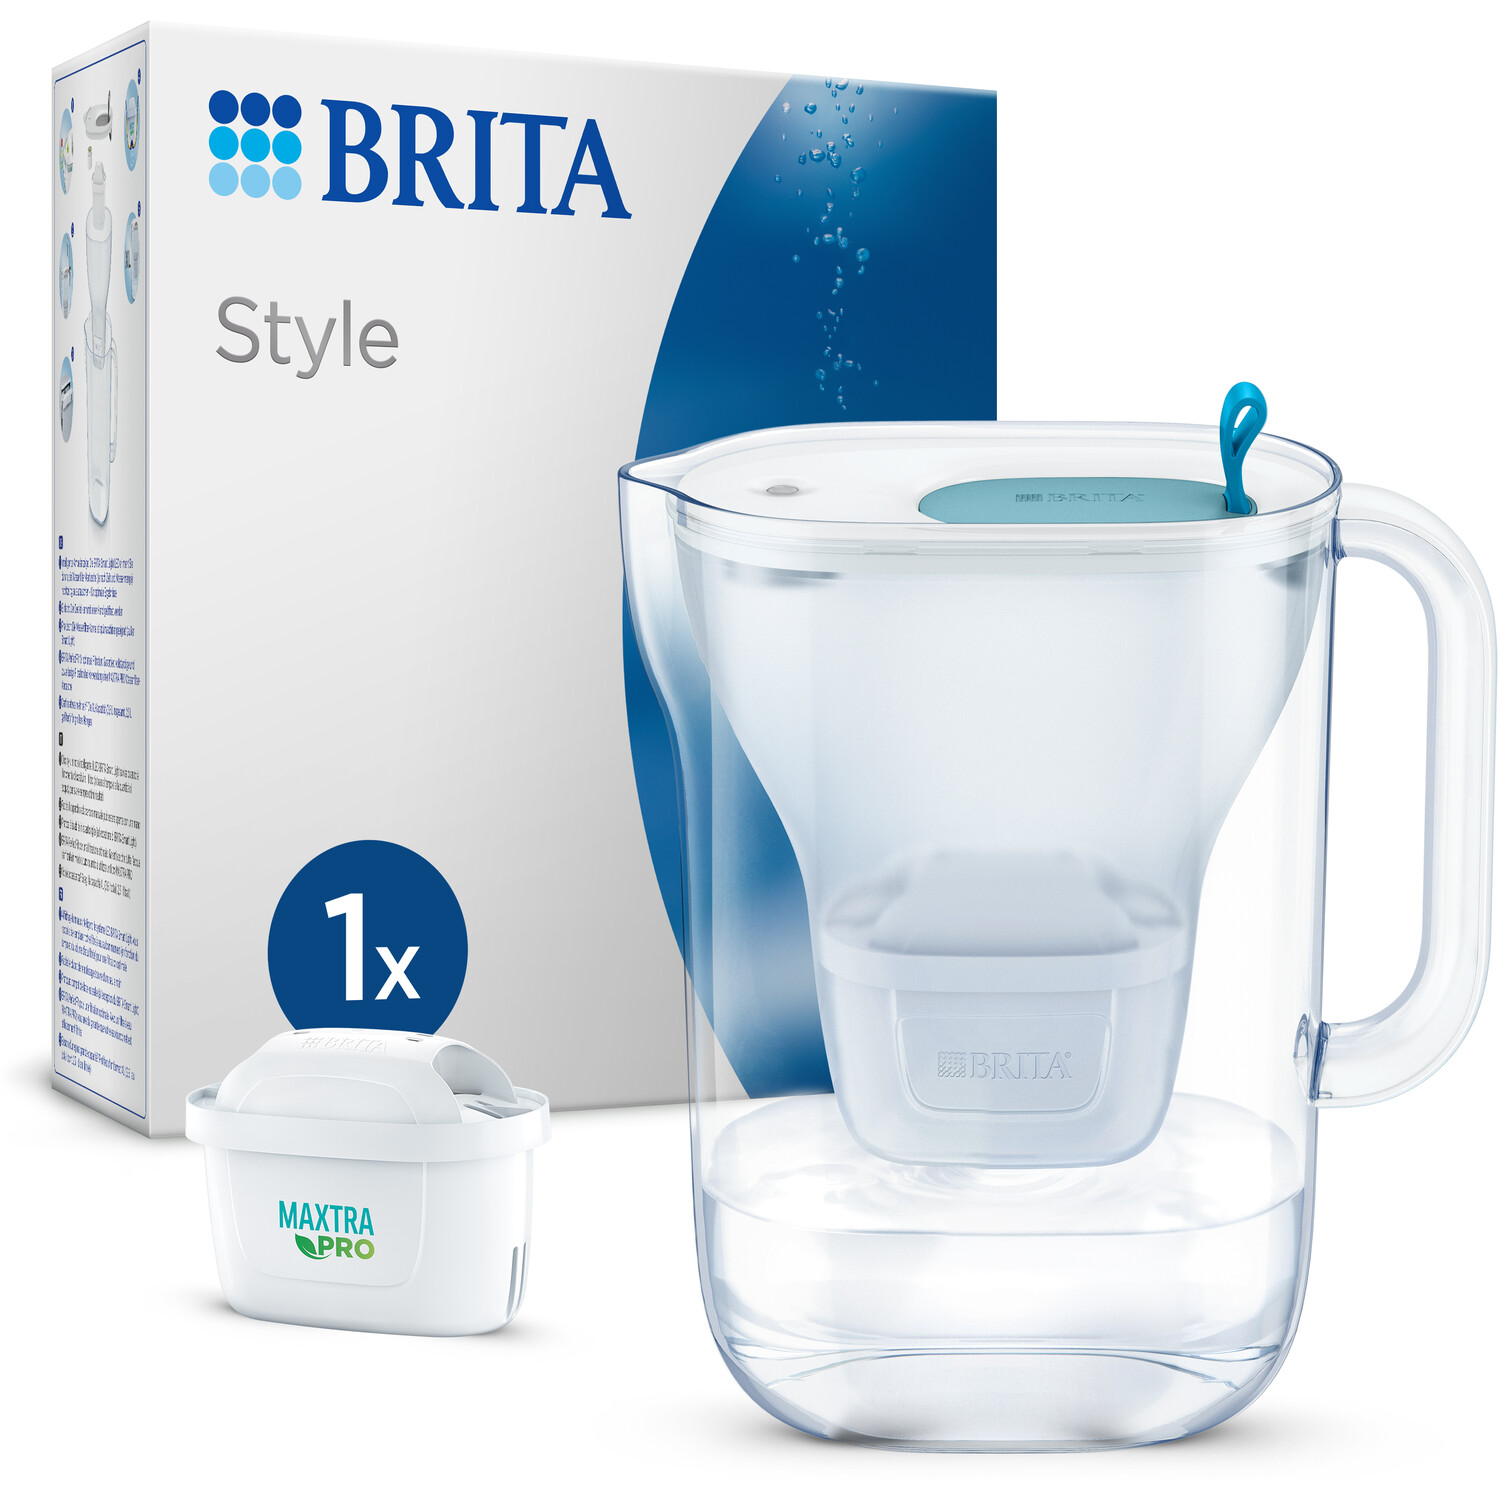 Brita Style Water Filter Jug - Blue | Wilko